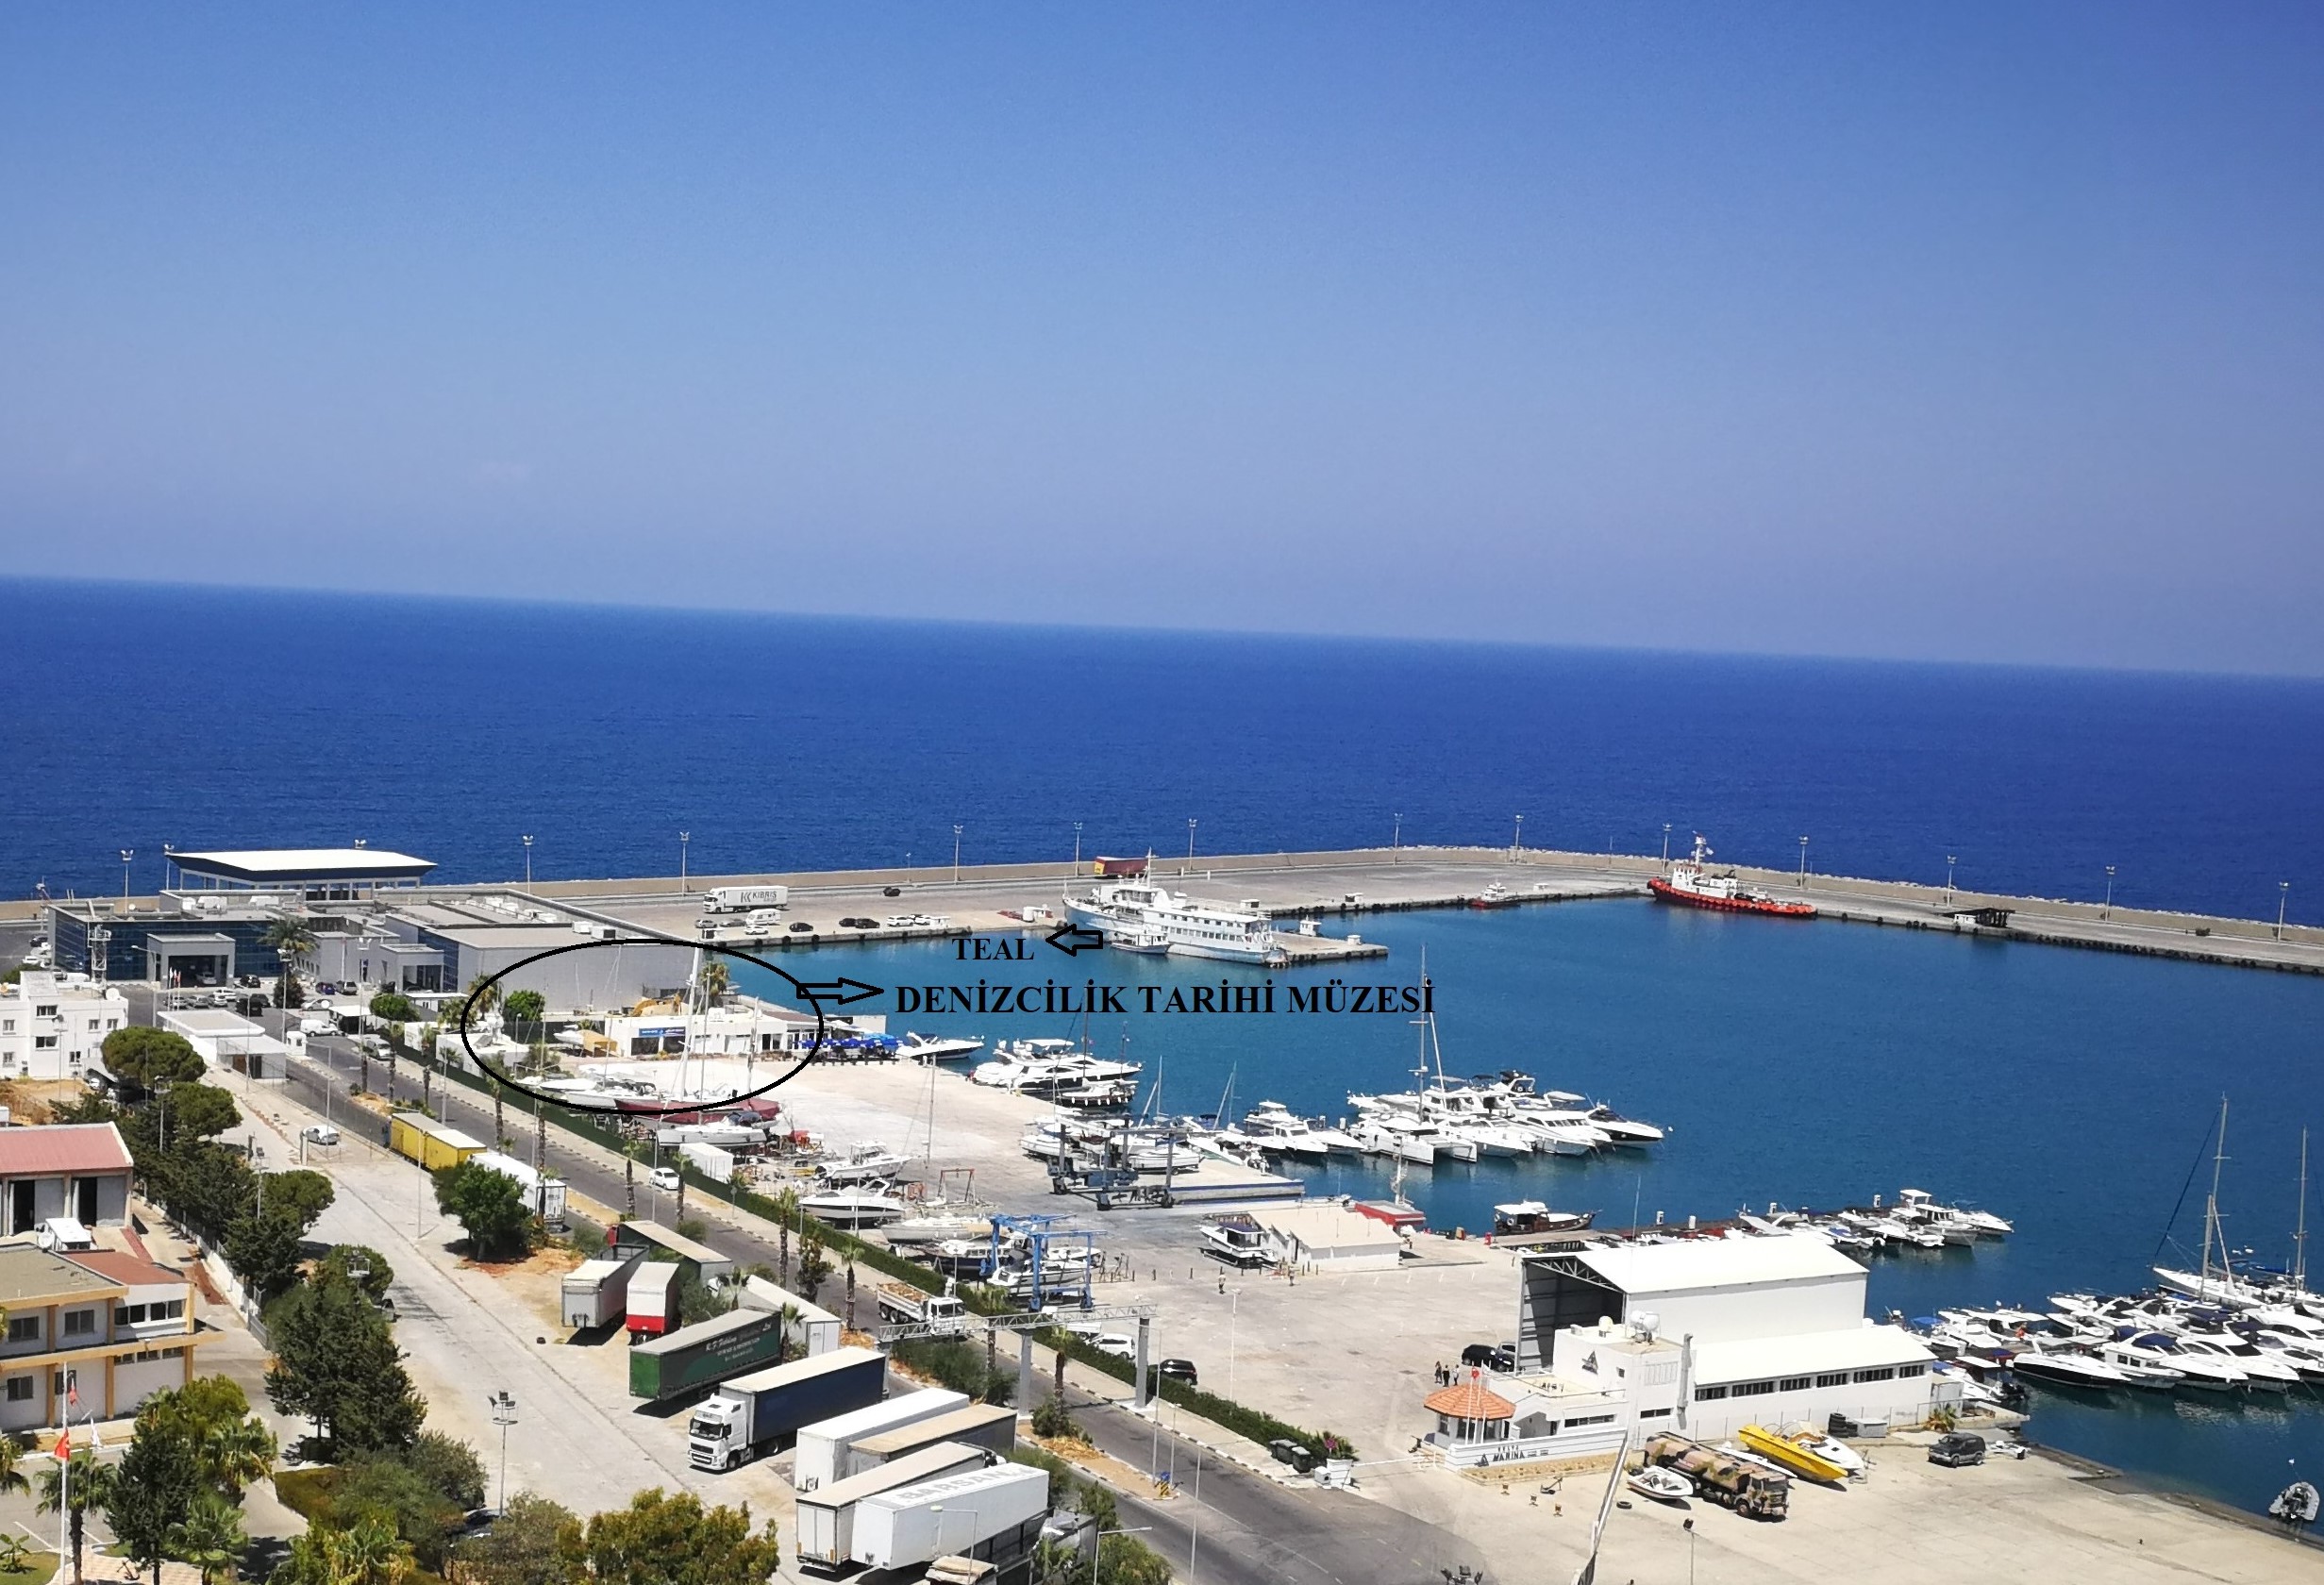 Girne Limanı’na gemi müze olarak kurulacak Denizcilik Tarihi Müzesi’nde temeller atıldı